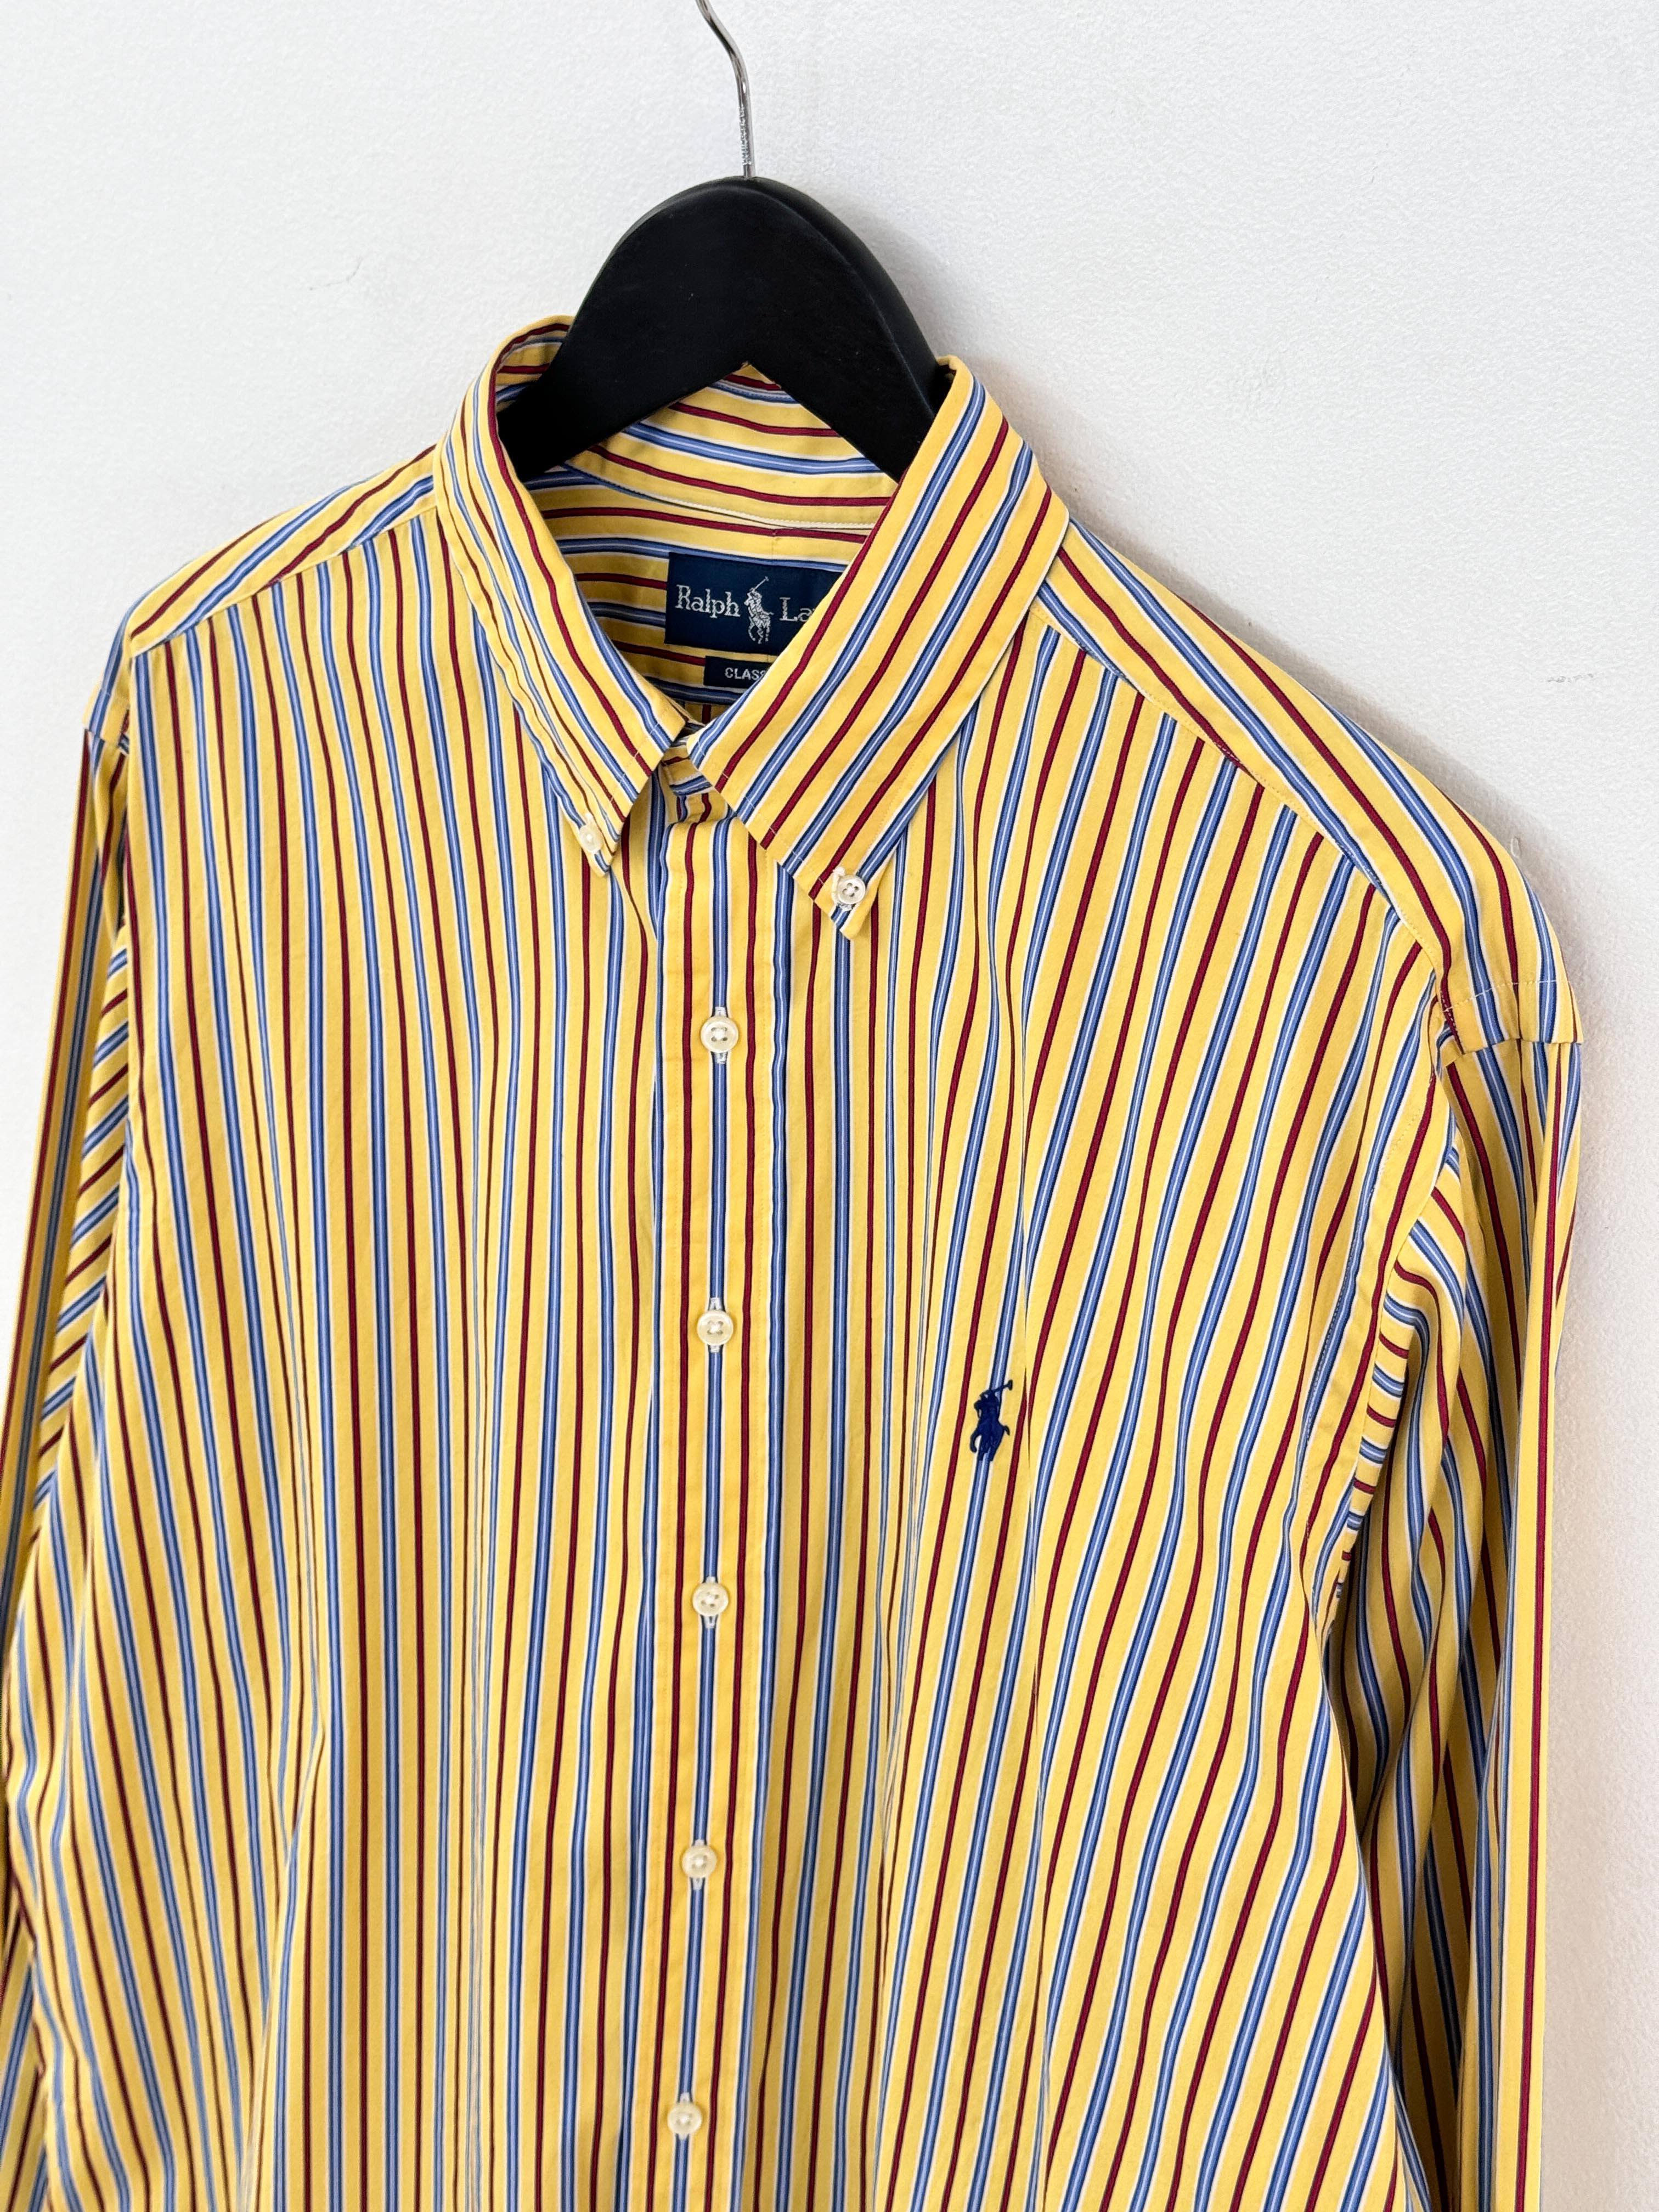 Polo RalphLauren stripe shirt